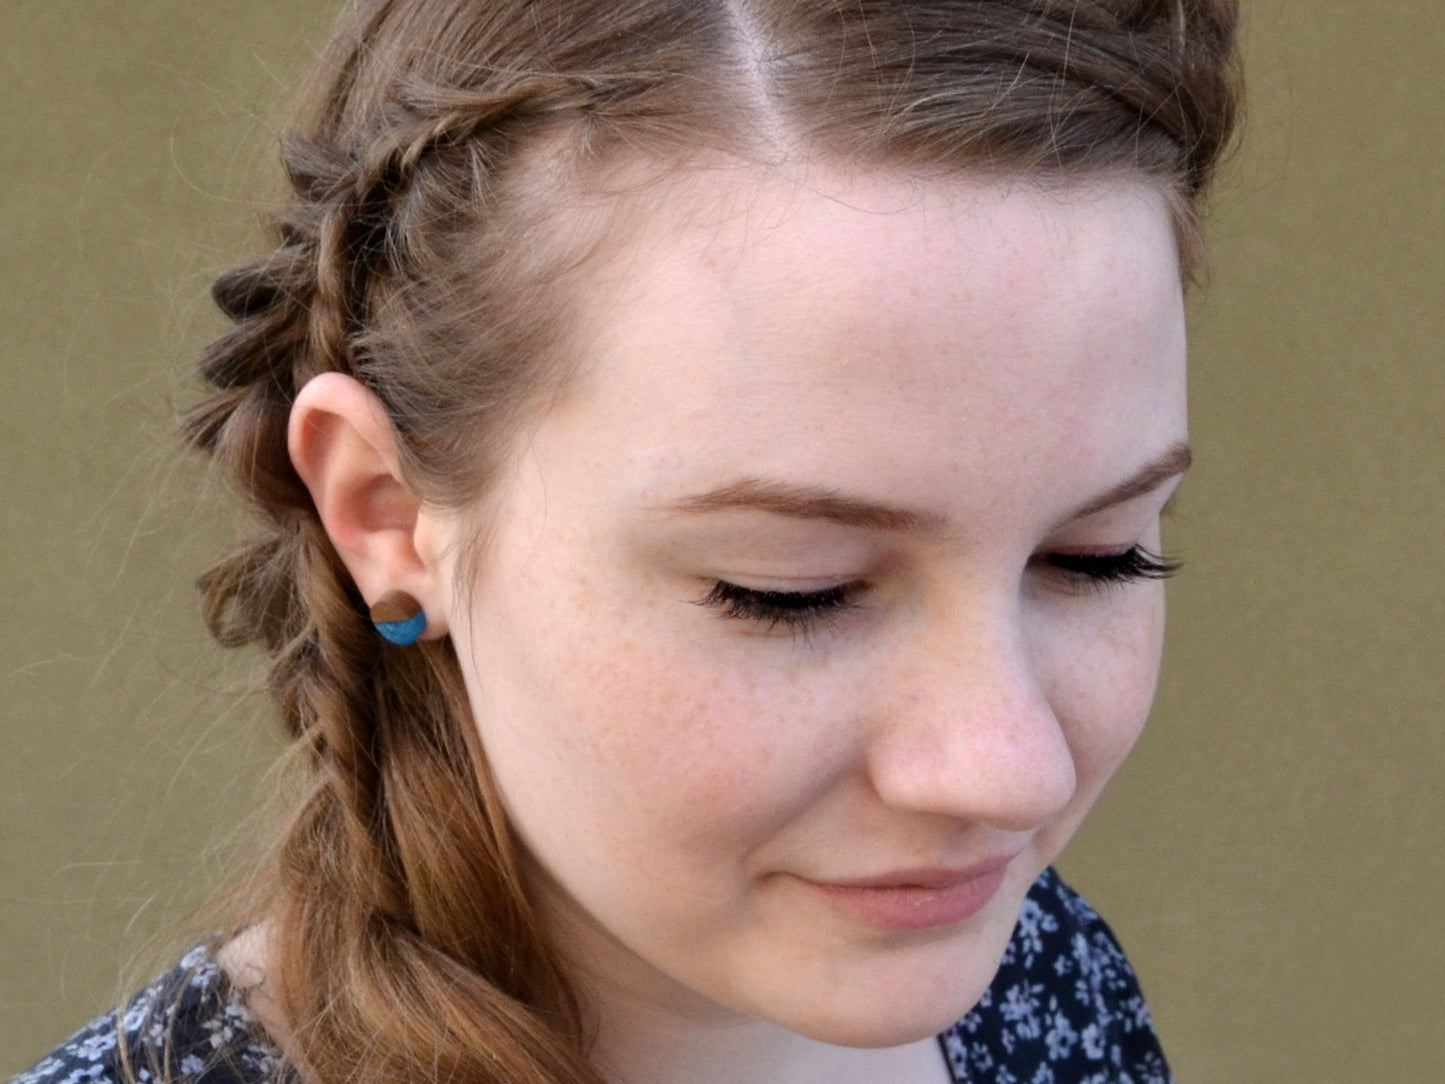 dark walnut and ocean blue stud earrings on model